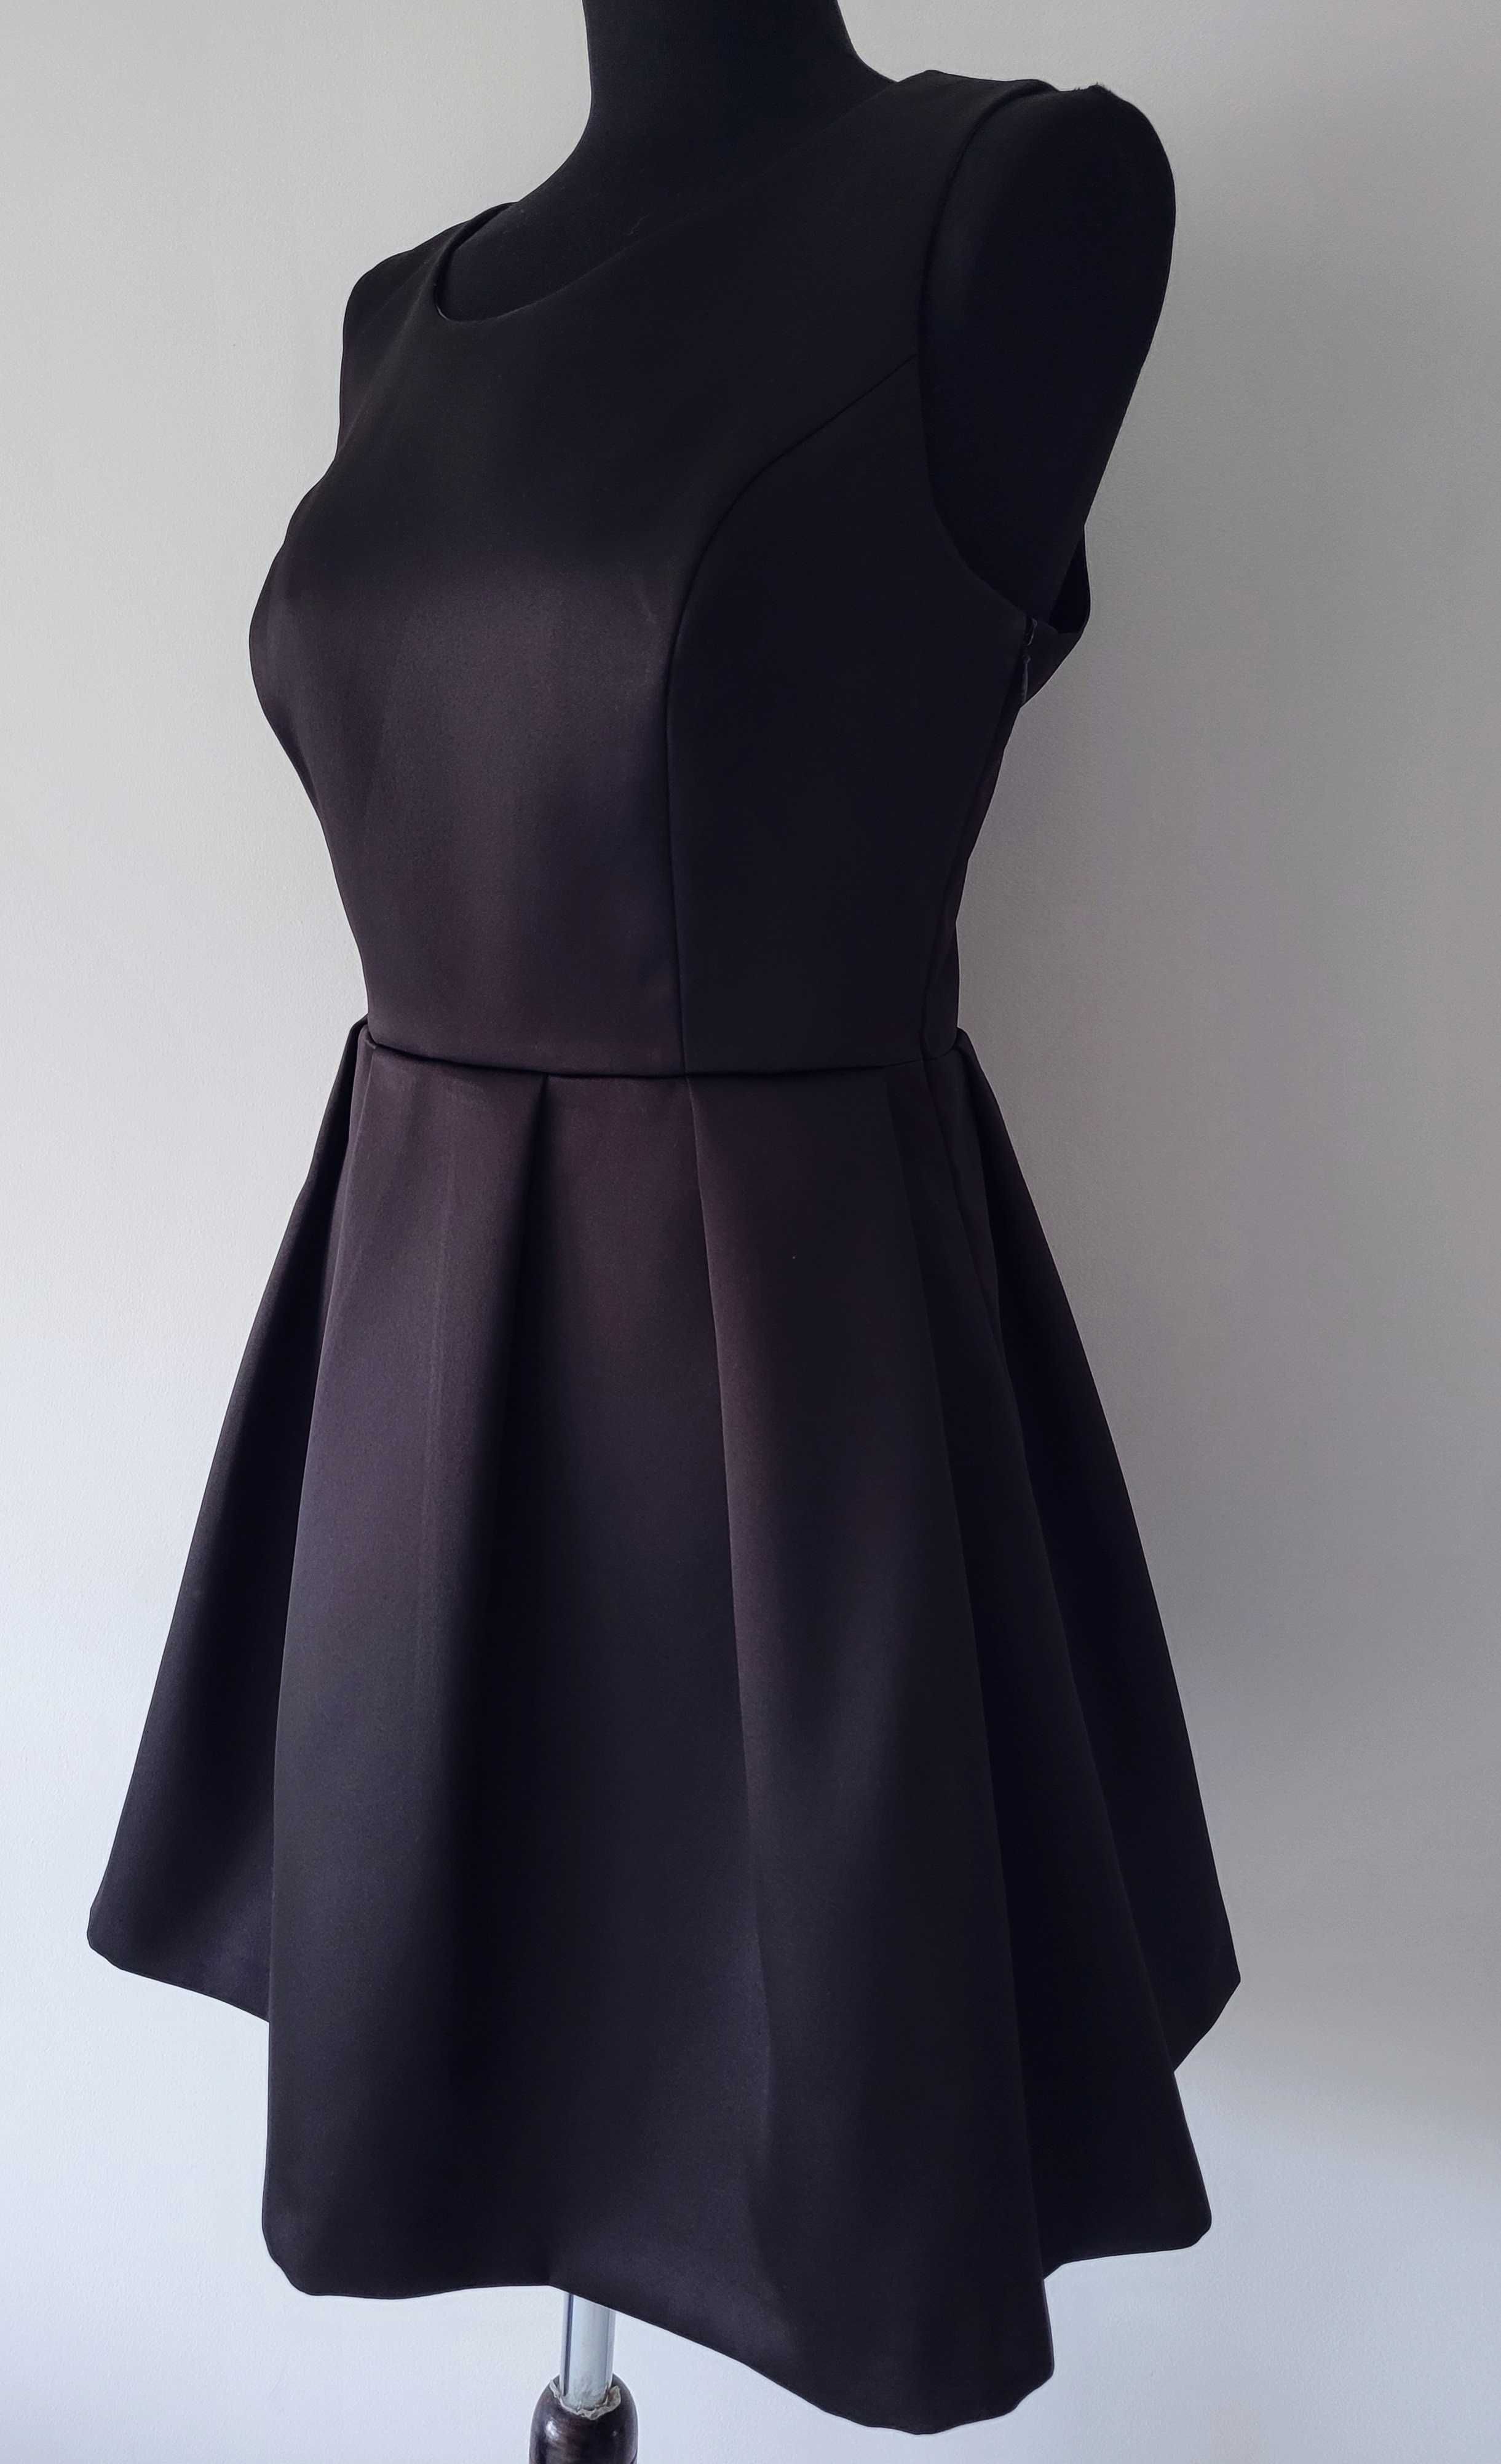 Nowa piękna czarna sukienka TopShop 40/42